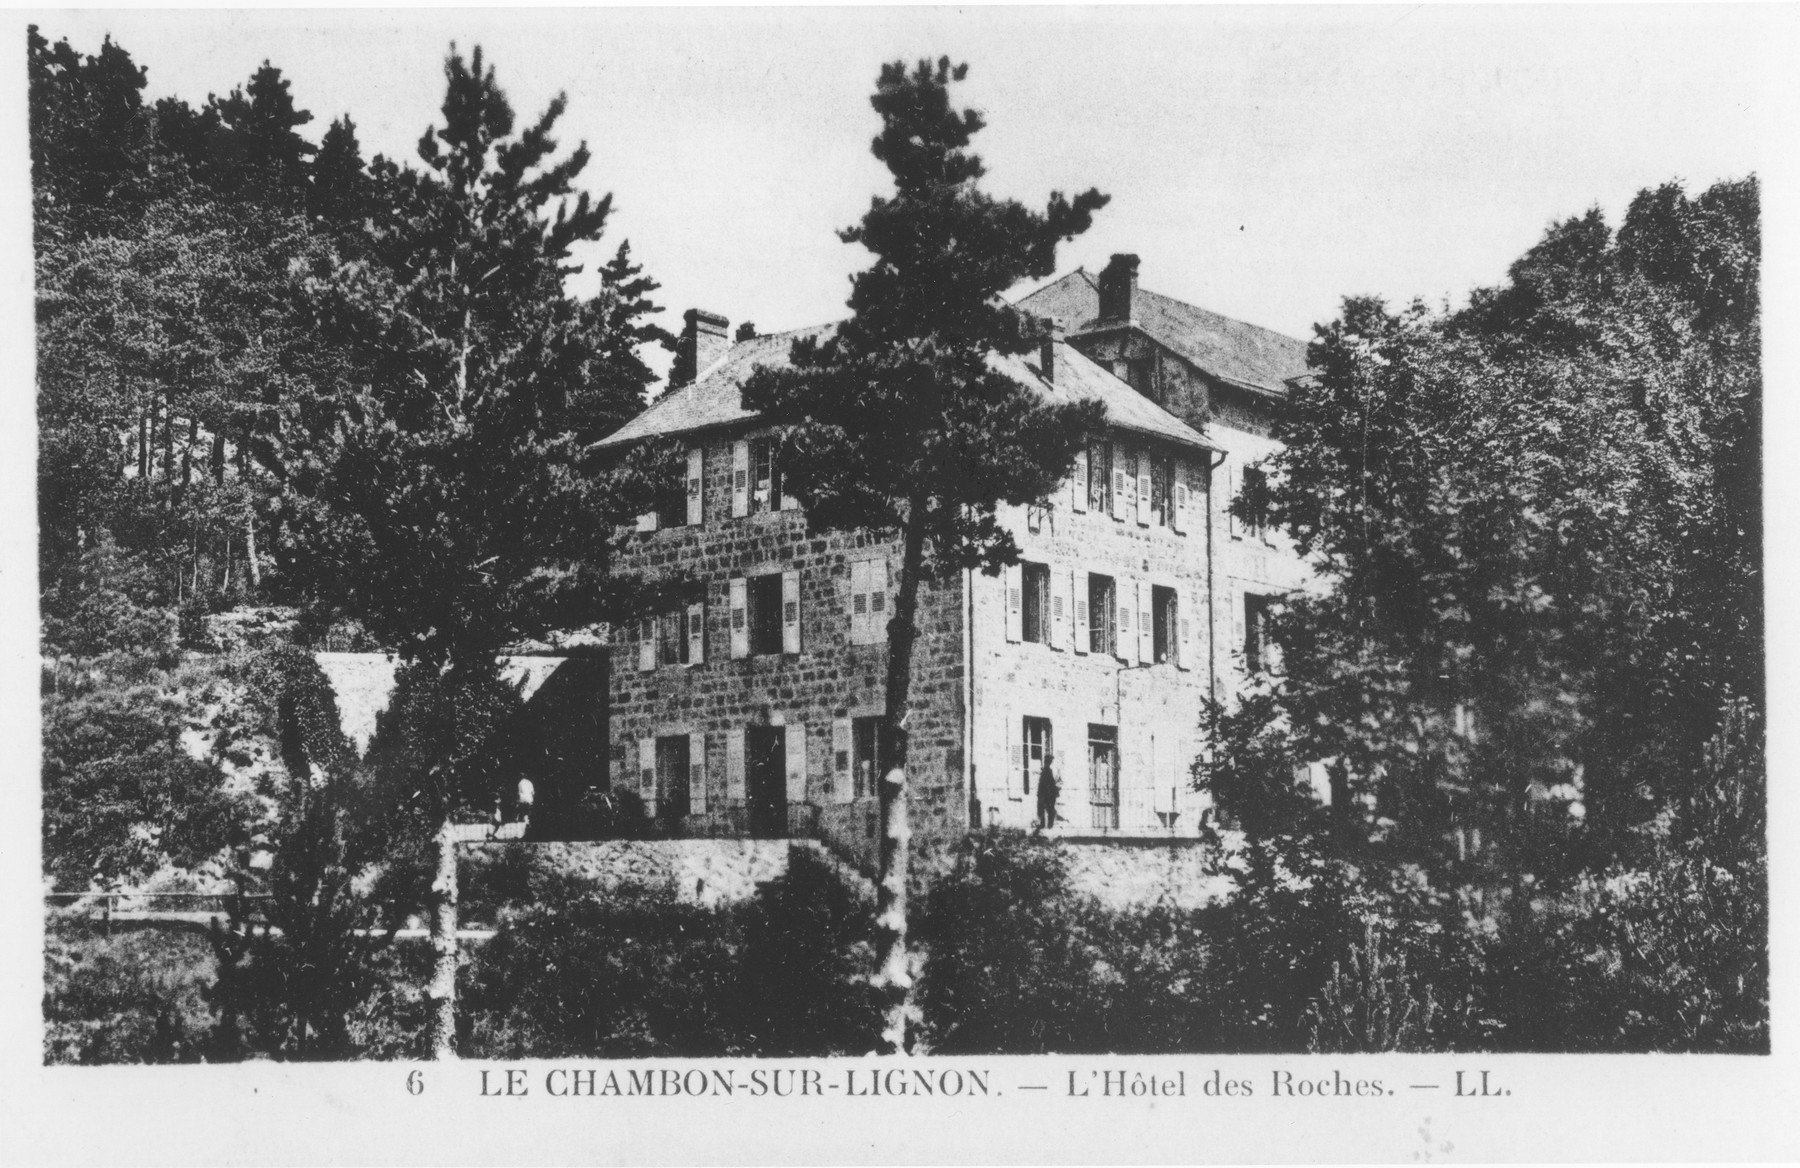 Picture postcard of the Hôtel des Roches in Le Chambon-sur-Lignon.